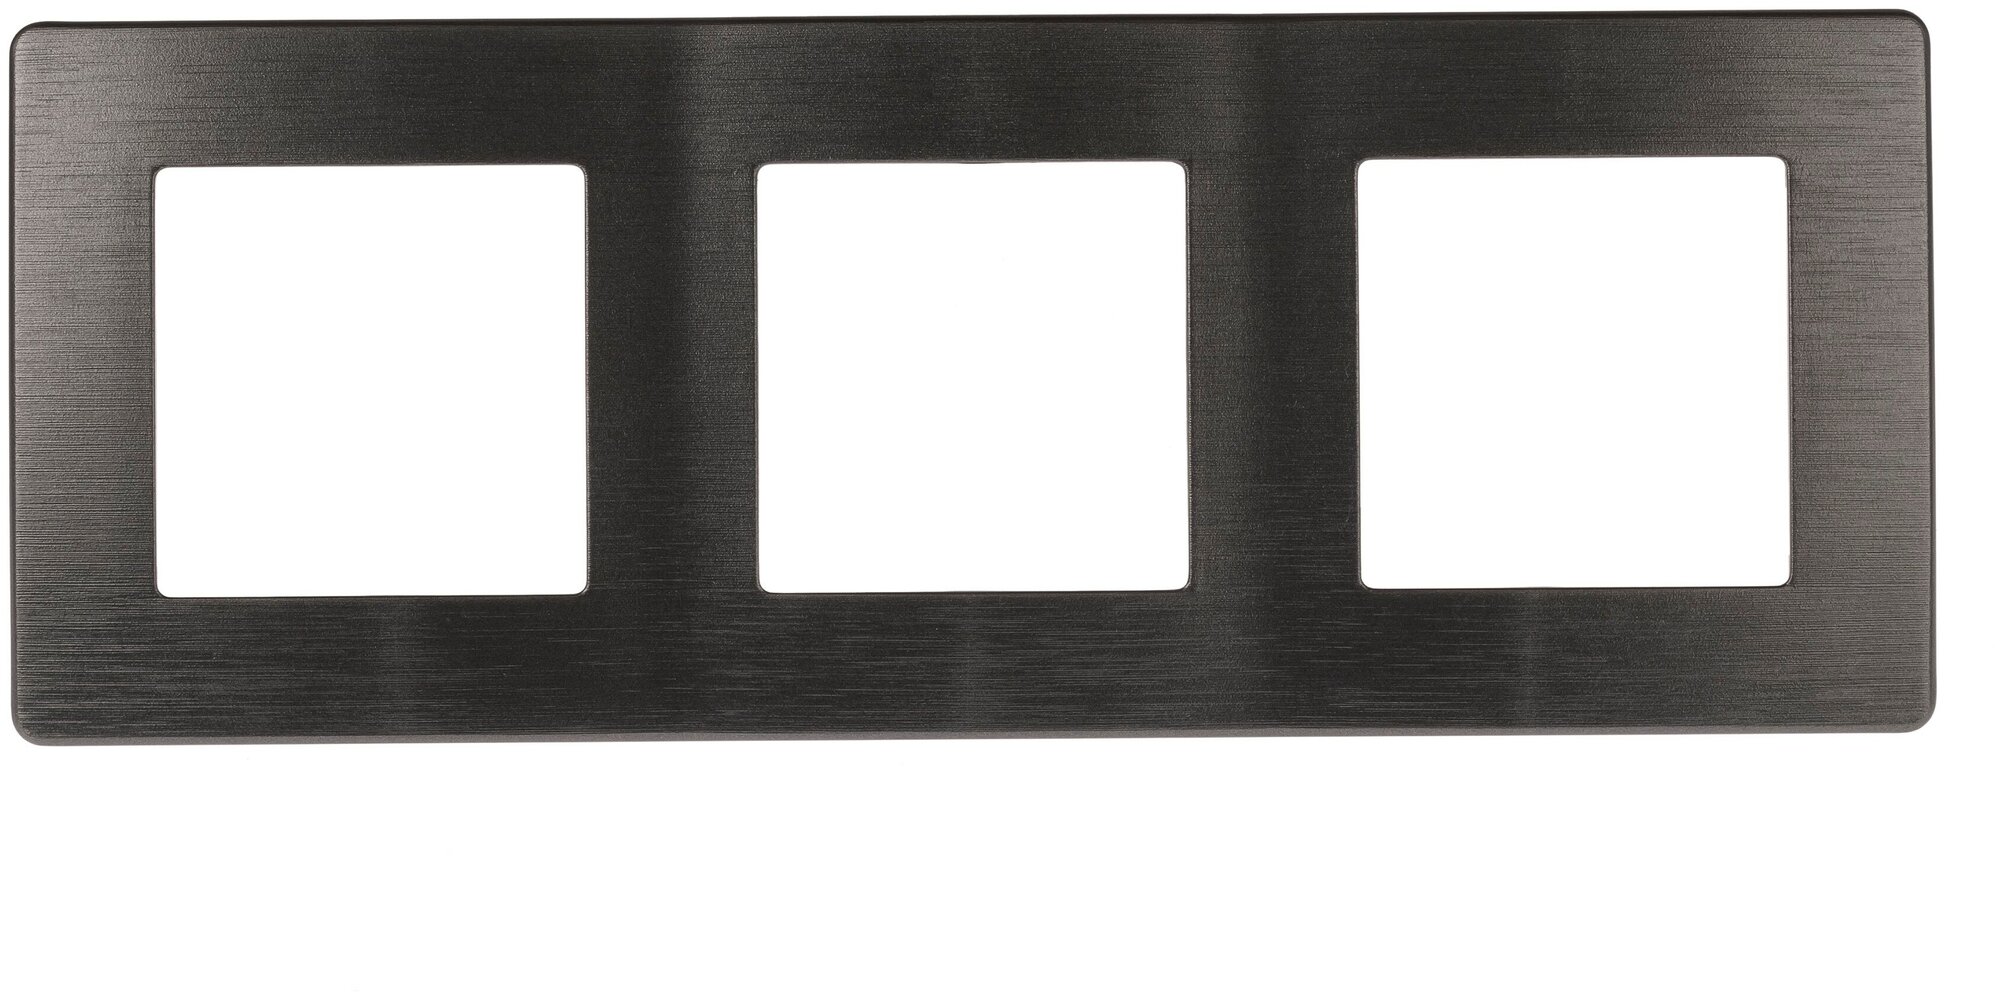 Рамка для розеток и выключателей ЭРА Серия 12 12-5103-12 на 3 поста, ЭРА12 Сатин, графит арт. Б0052525 (1 шт.)